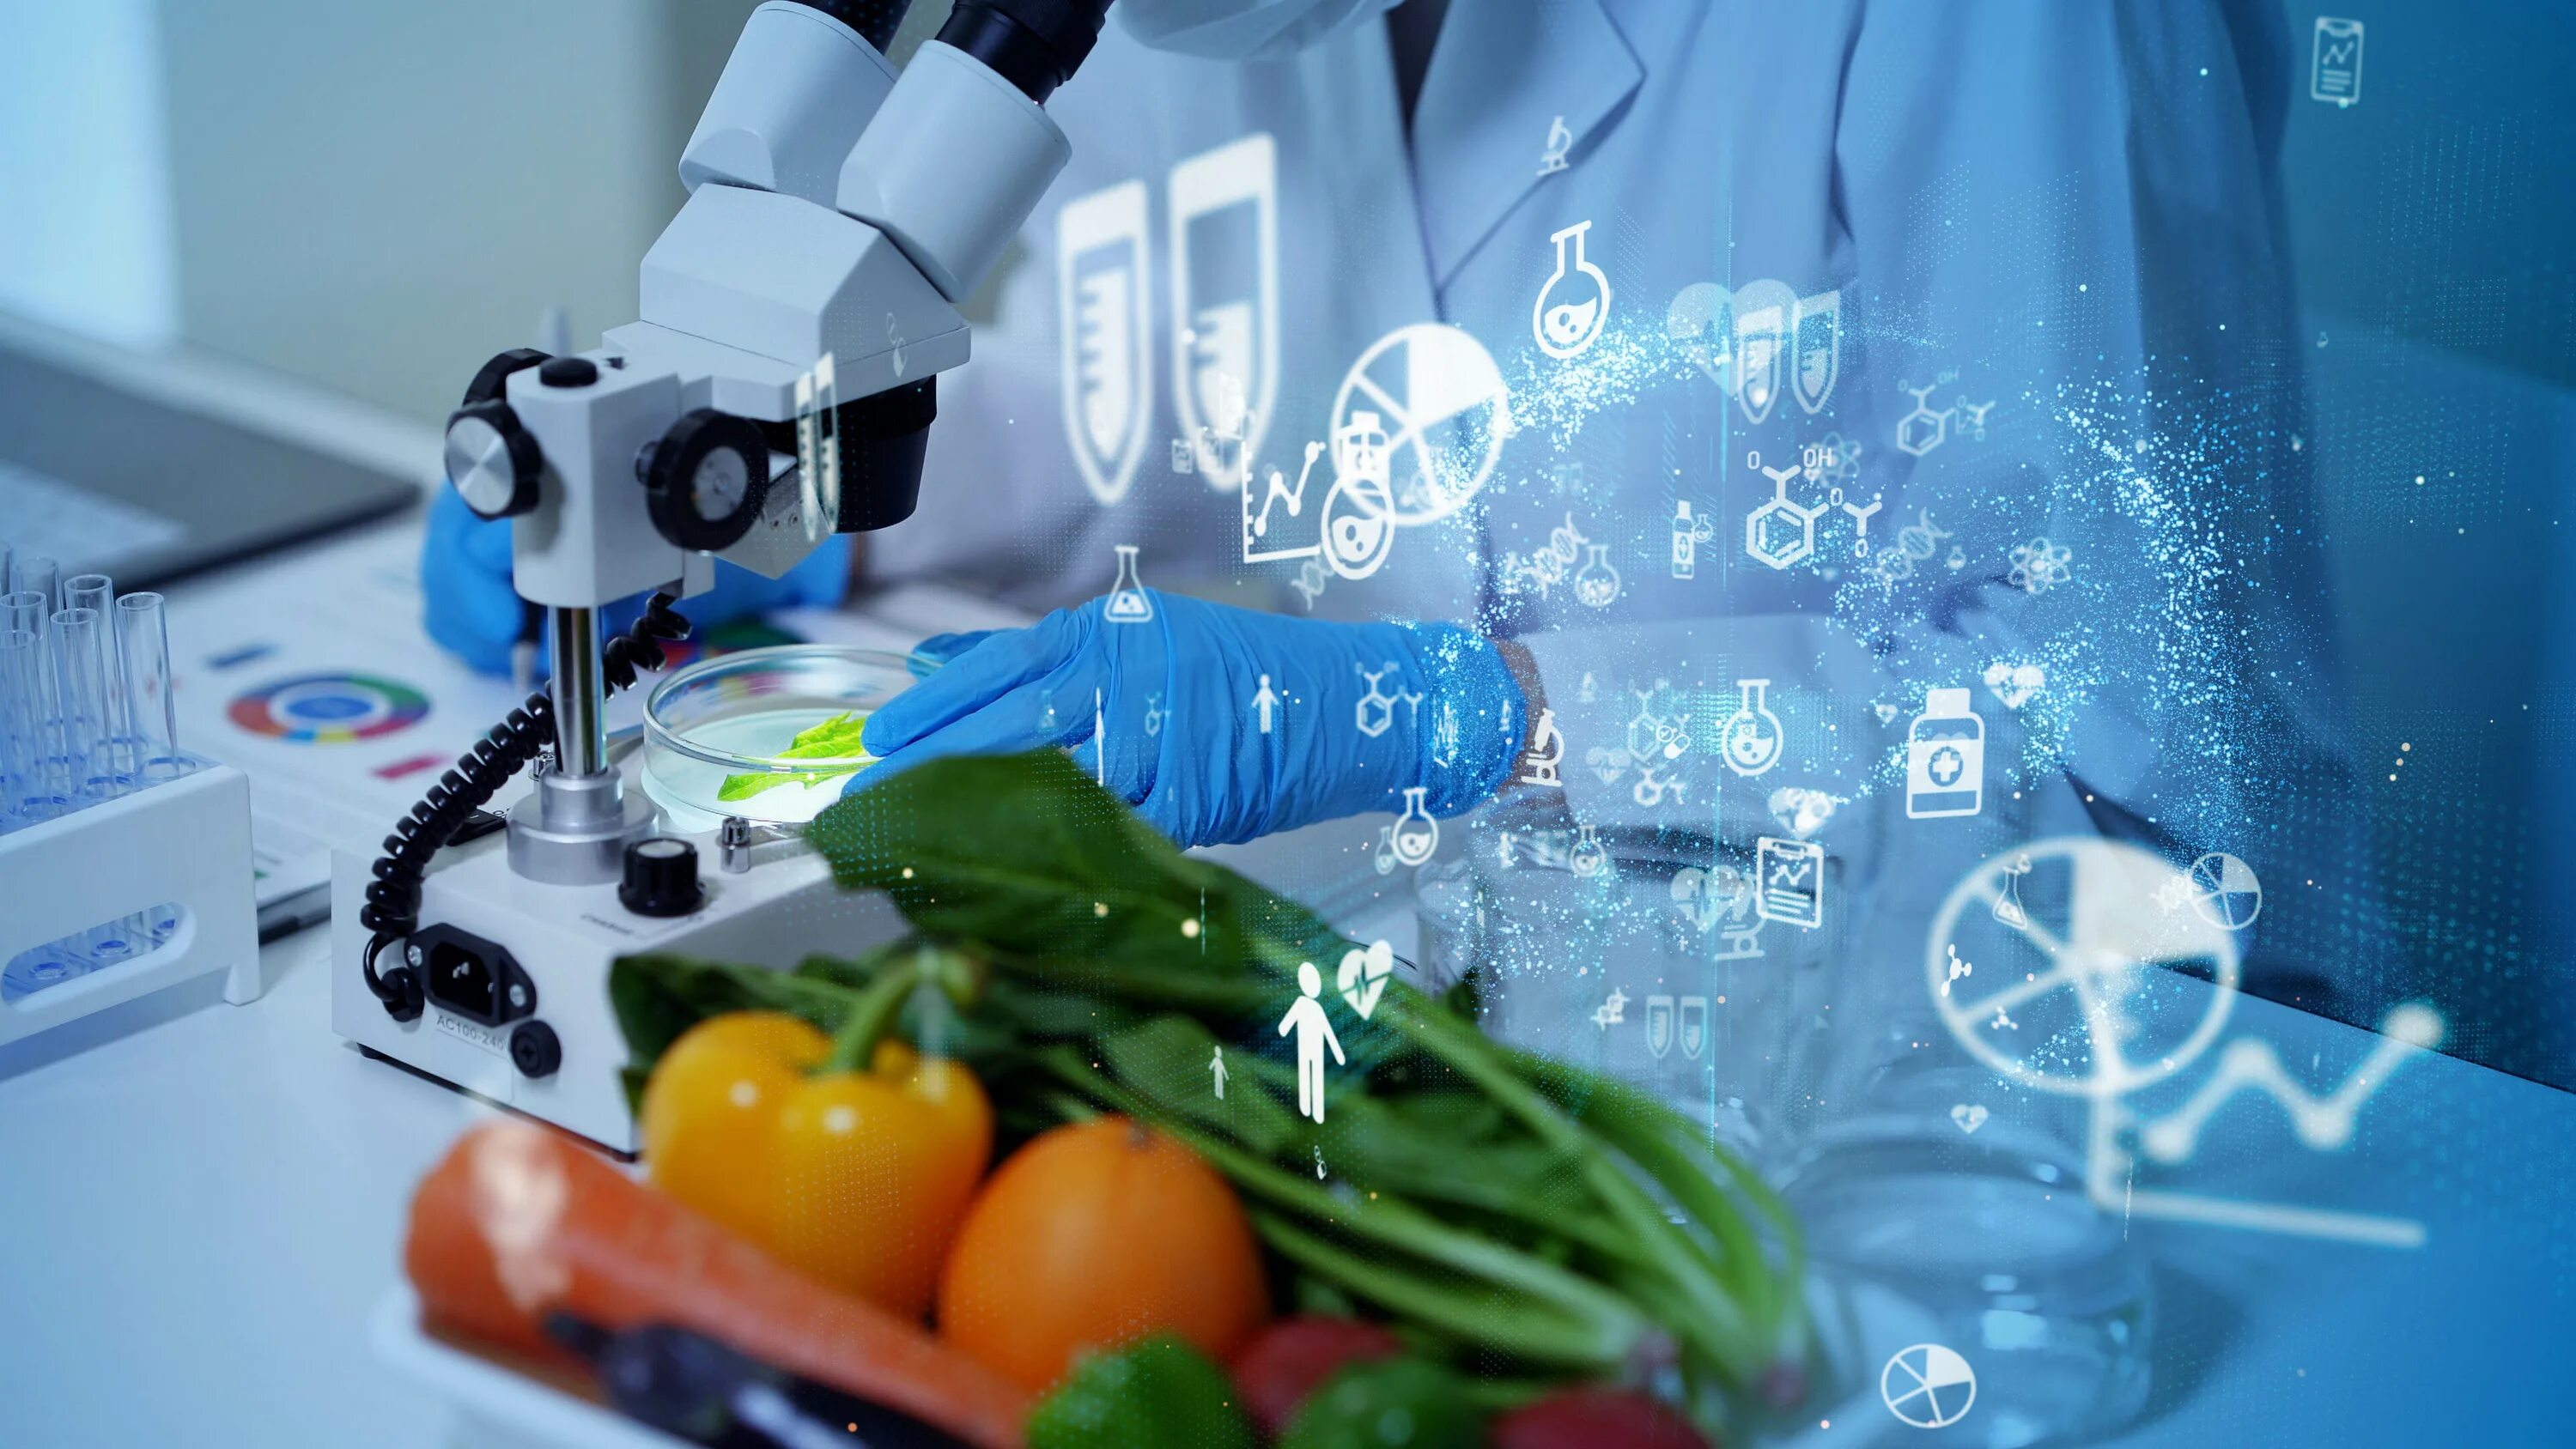 Новая технология пищевой промышленности. Биотехнологии в промышленности. Биотехнология пищевых продуктов. Биотехнологии в пищевой промышленности. Пищевая биотехнология.